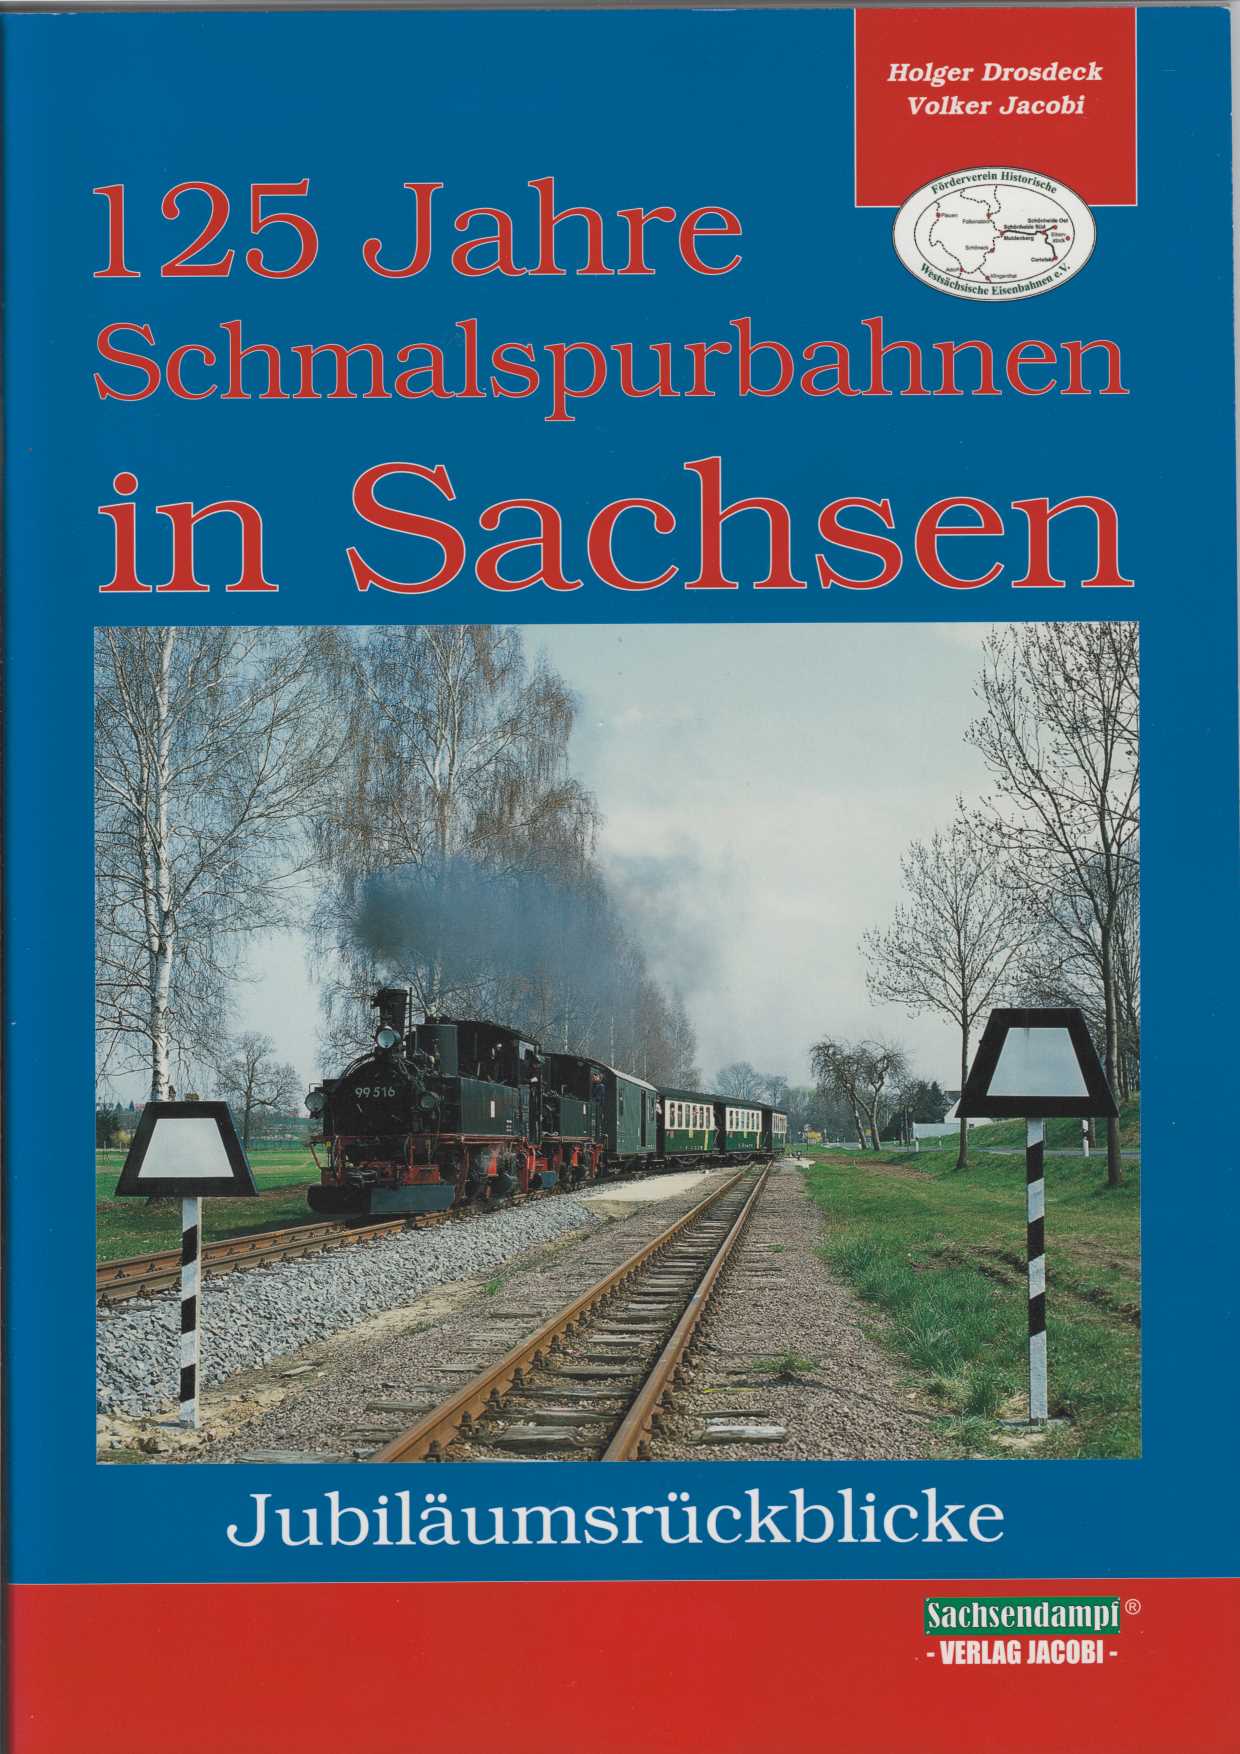 125 Jahre Schmalspurbahnen in Sachsen.